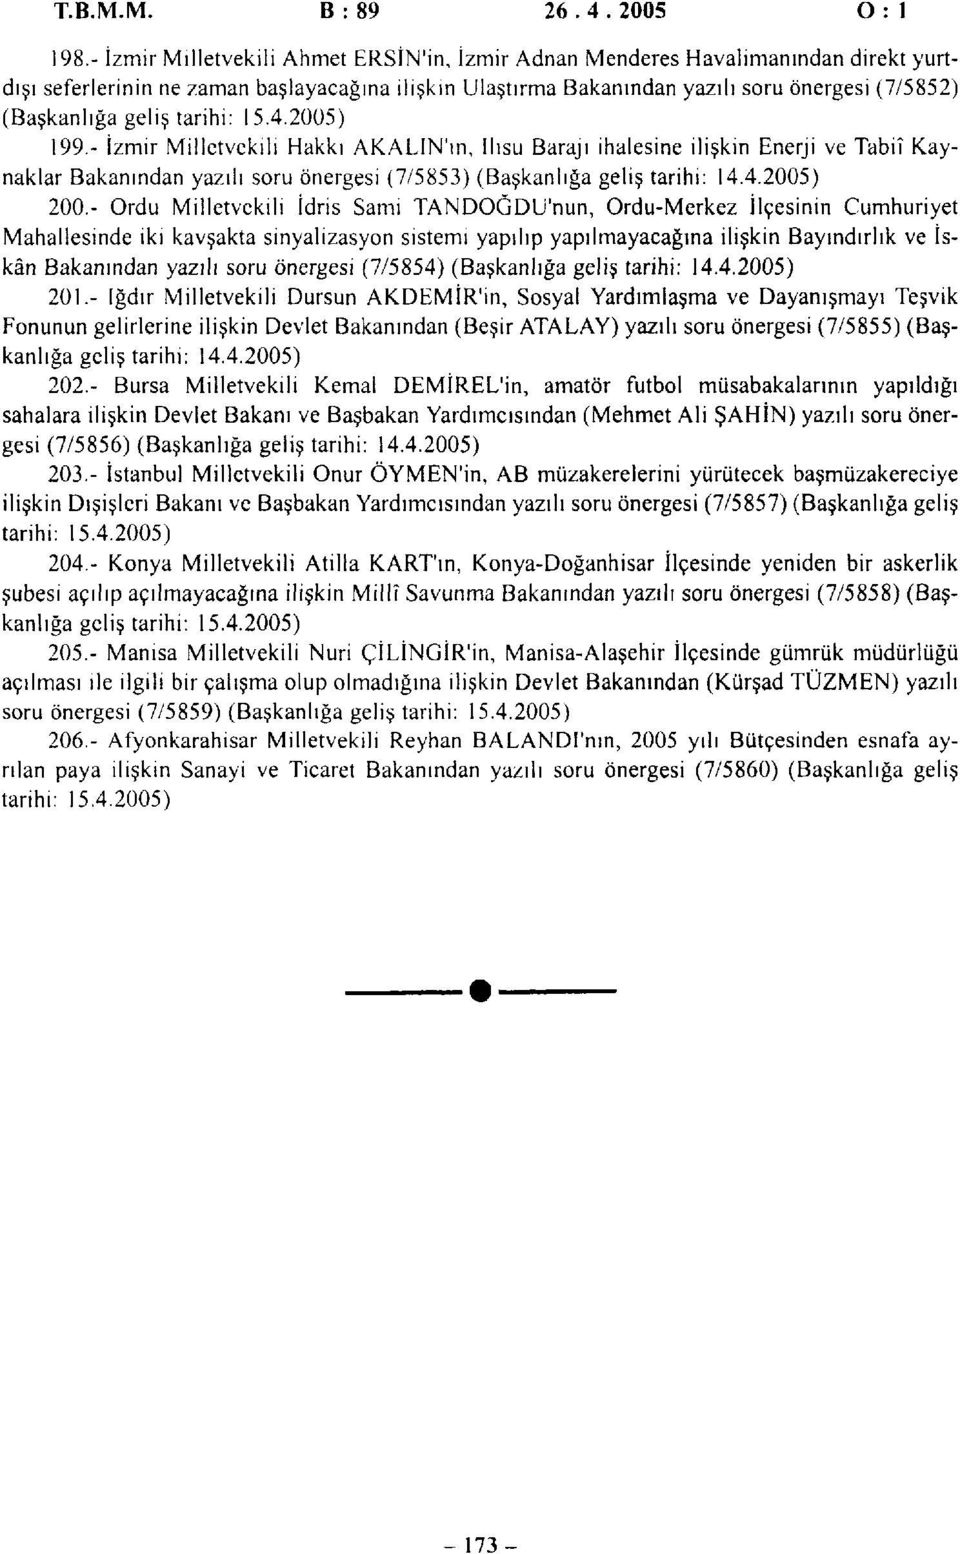 geliş tarihi: 15.4.2005) 199.- İzmir Milletvekili Hakkı AKALIN'ın, Ilısu Barajı ihalesine ilişkin Enerji ve Tabiî Kaynaklar Bakanından yazılı soru önergesi (7/5853) (Başkanlığa geliş tarihi: 14.4.2005) 200.